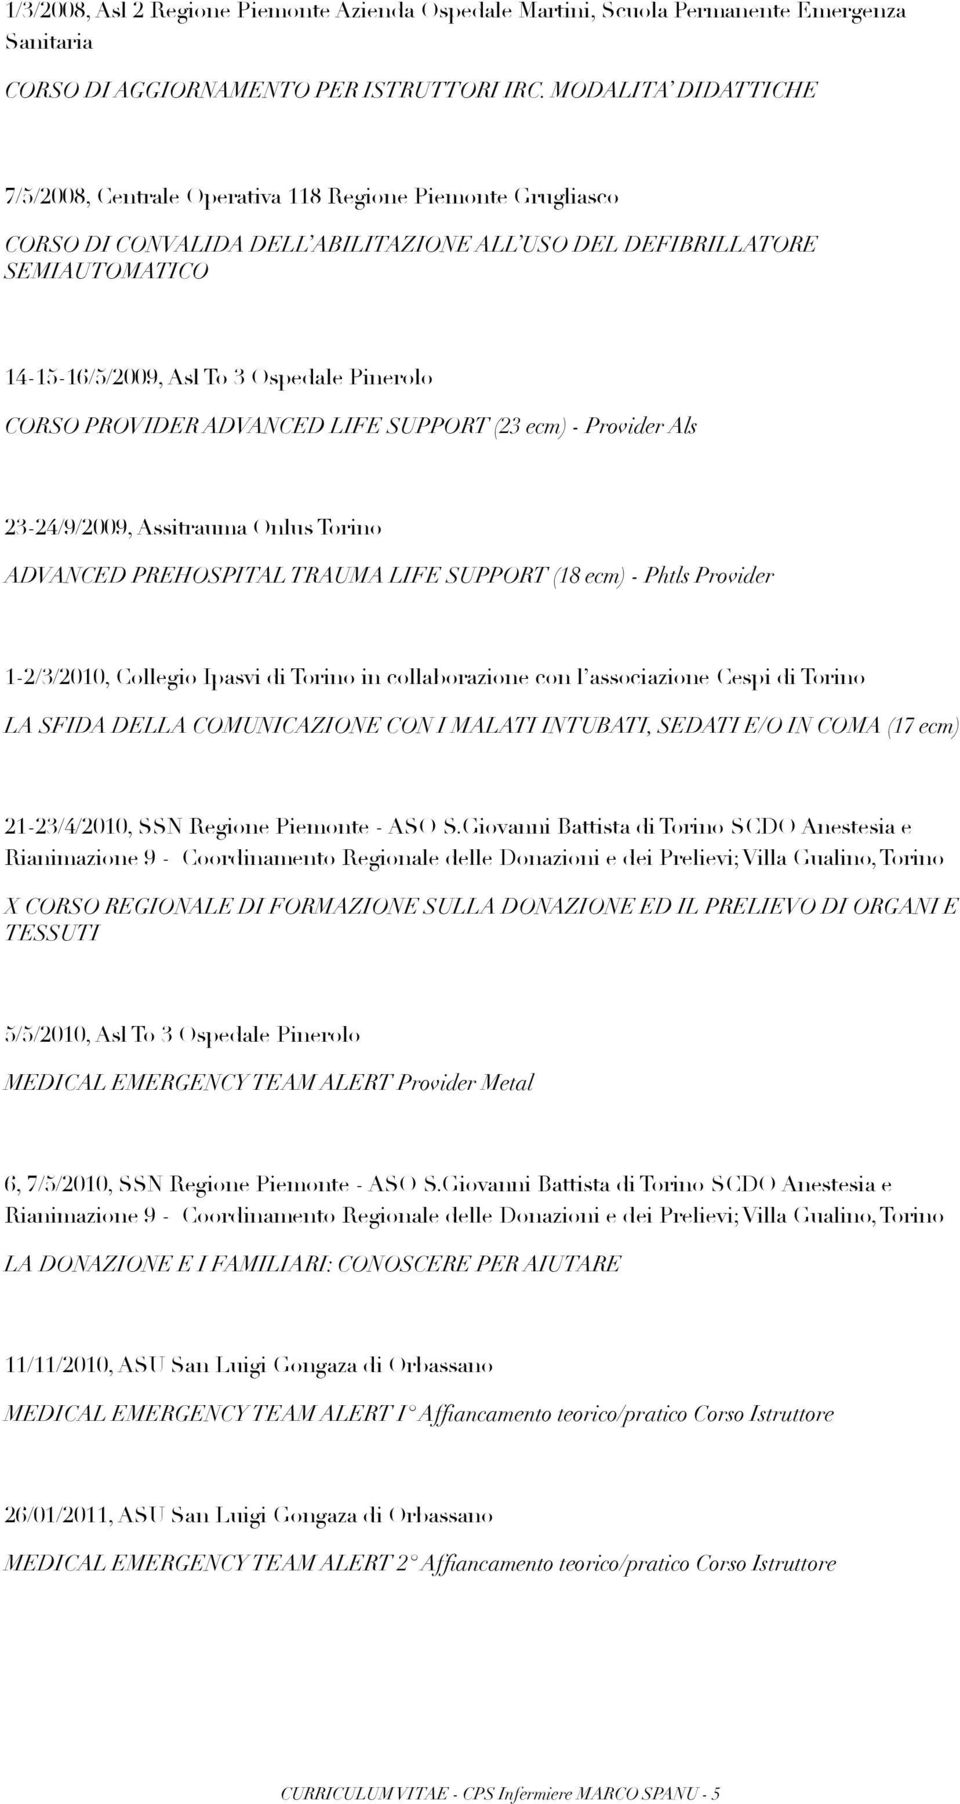 Pinerolo CORSO PROVIDER ADVANCED LIFE SUPPORT (23 ecm) - Provider Als 23-24/9/2009, Assitrauma Onlus Torino ADVANCED PREHOSPITAL TRAUMA LIFE SUPPORT (18 ecm) - Phtls Provider 1-2/3/2010, Collegio